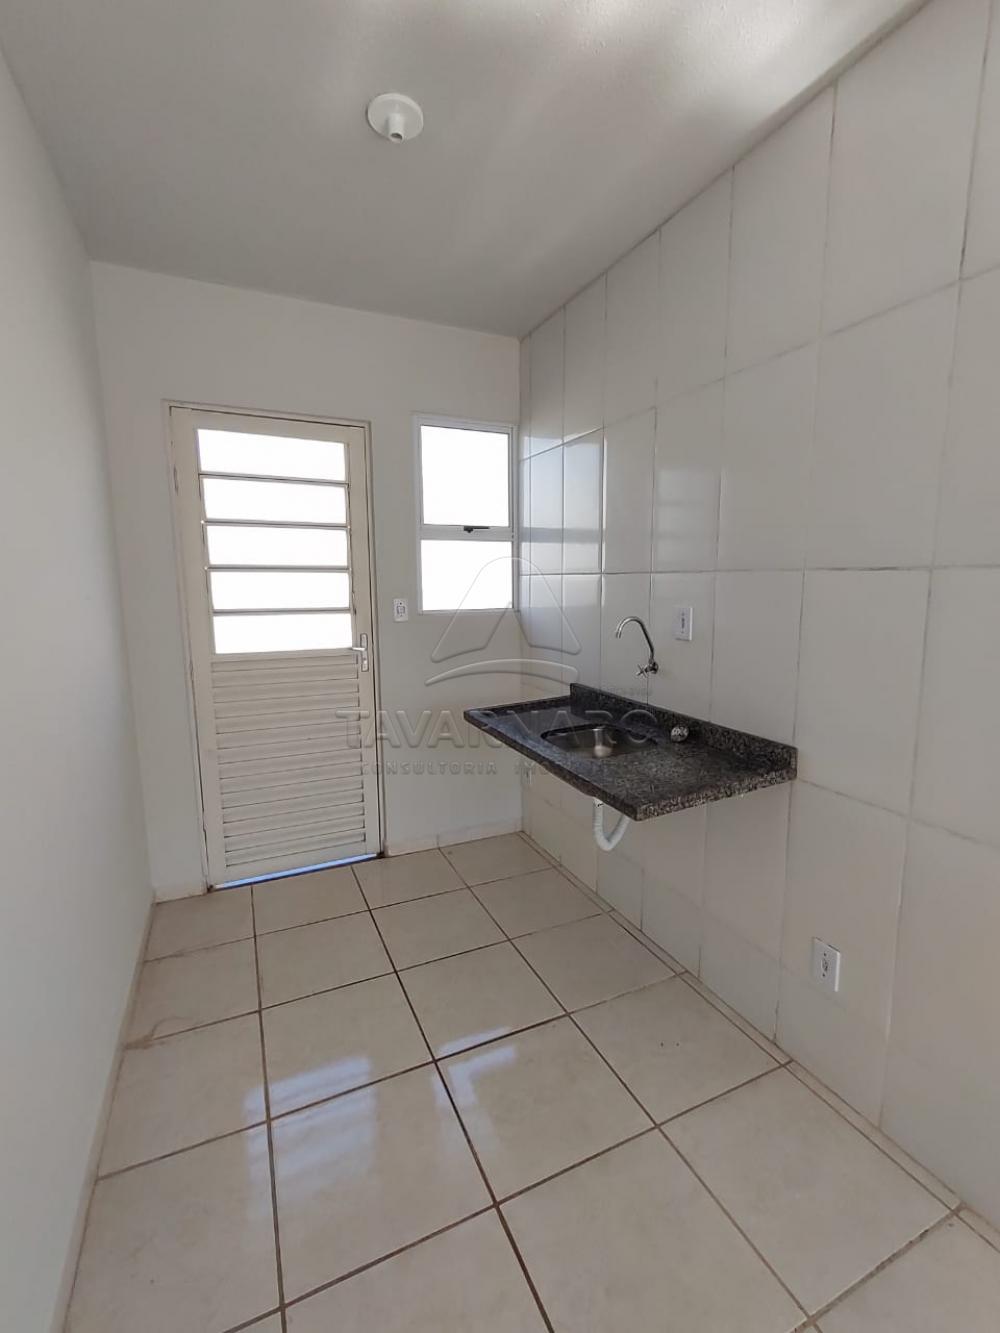 Alugar Casa / Condomínio em Ponta Grossa R$ 490,00 - Foto 4